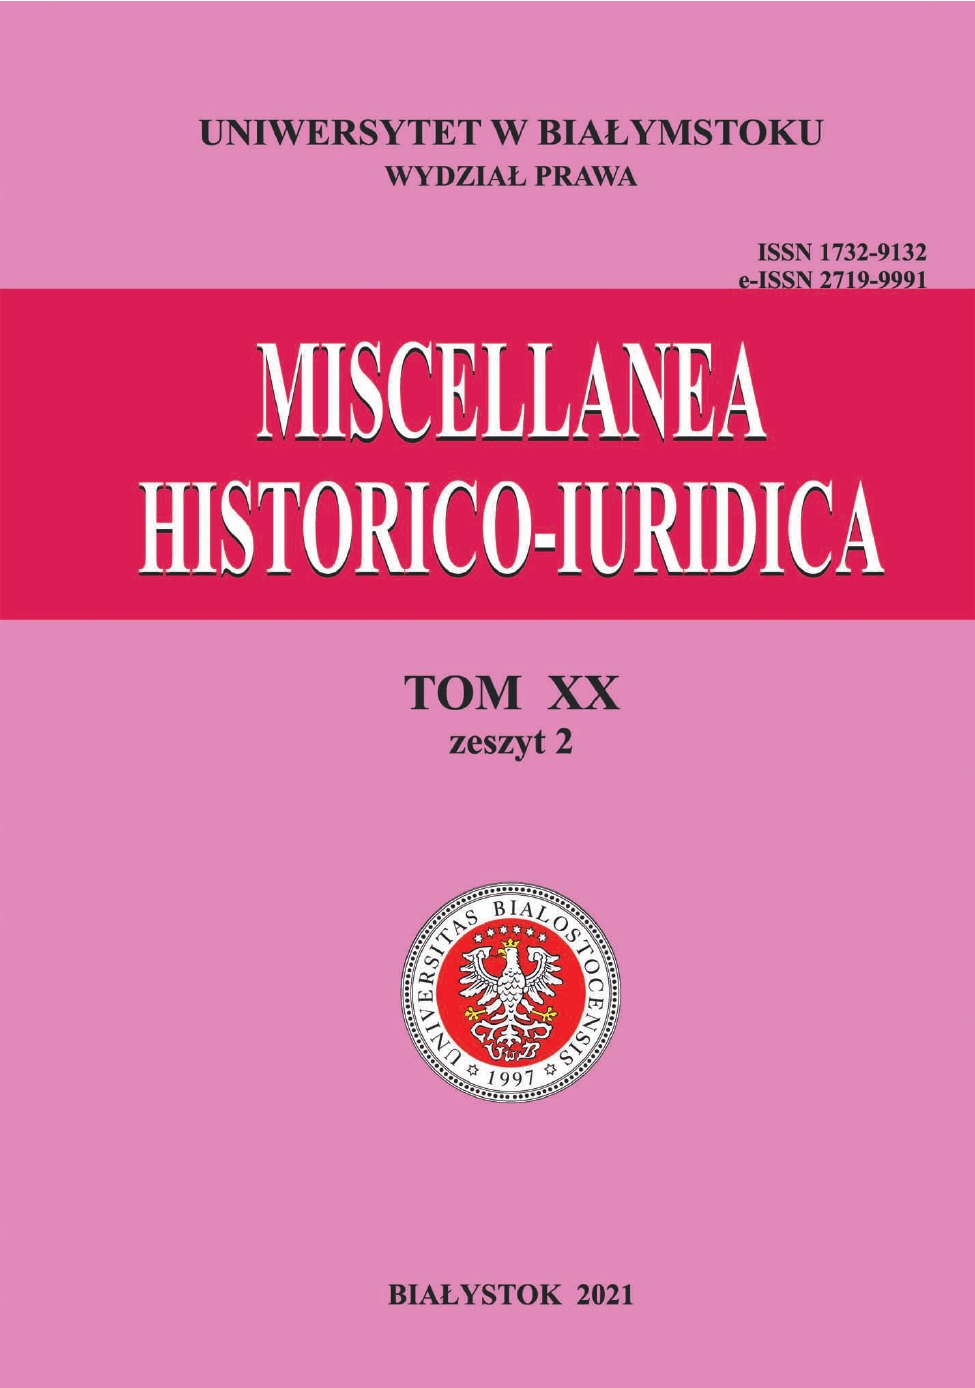 					View Vol. 20 No. 2 (2021): Miscellanea Historico-Iuridica Vol. XX No. 2
				